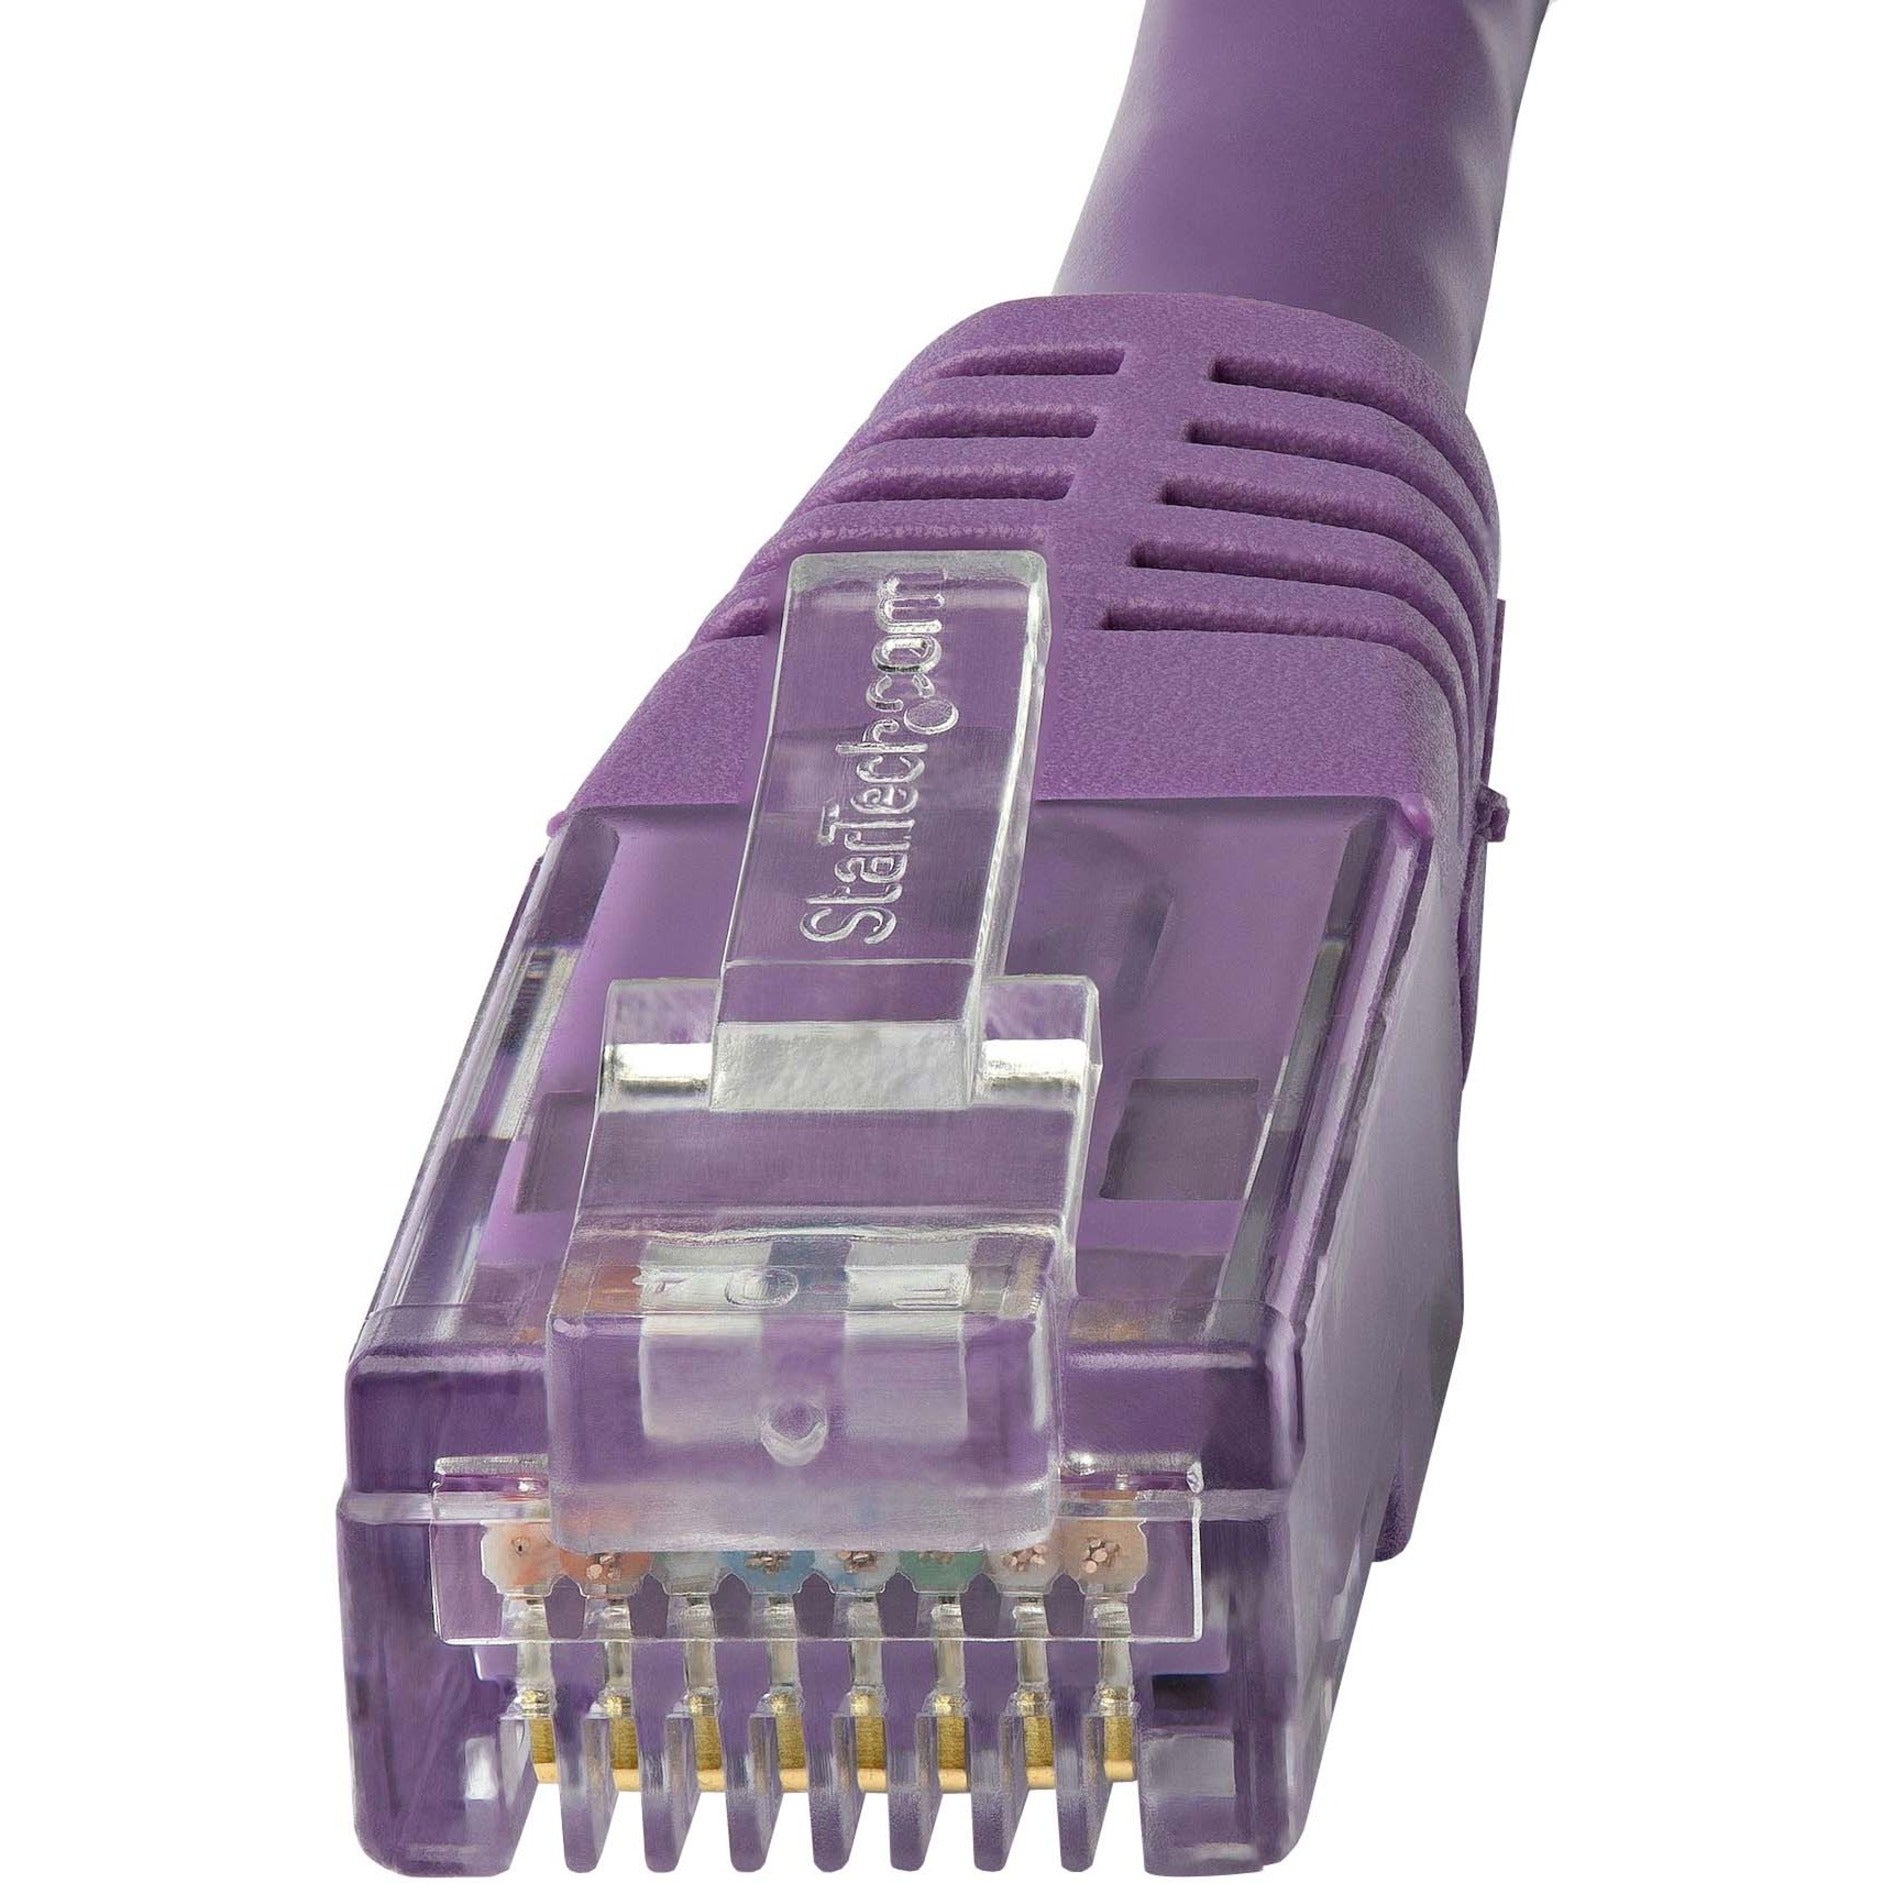 StarTech.com C6PATCH20PL 20ft Purple Cat6 UTP Patch Cable, Gigabit Ethernet Network Cord